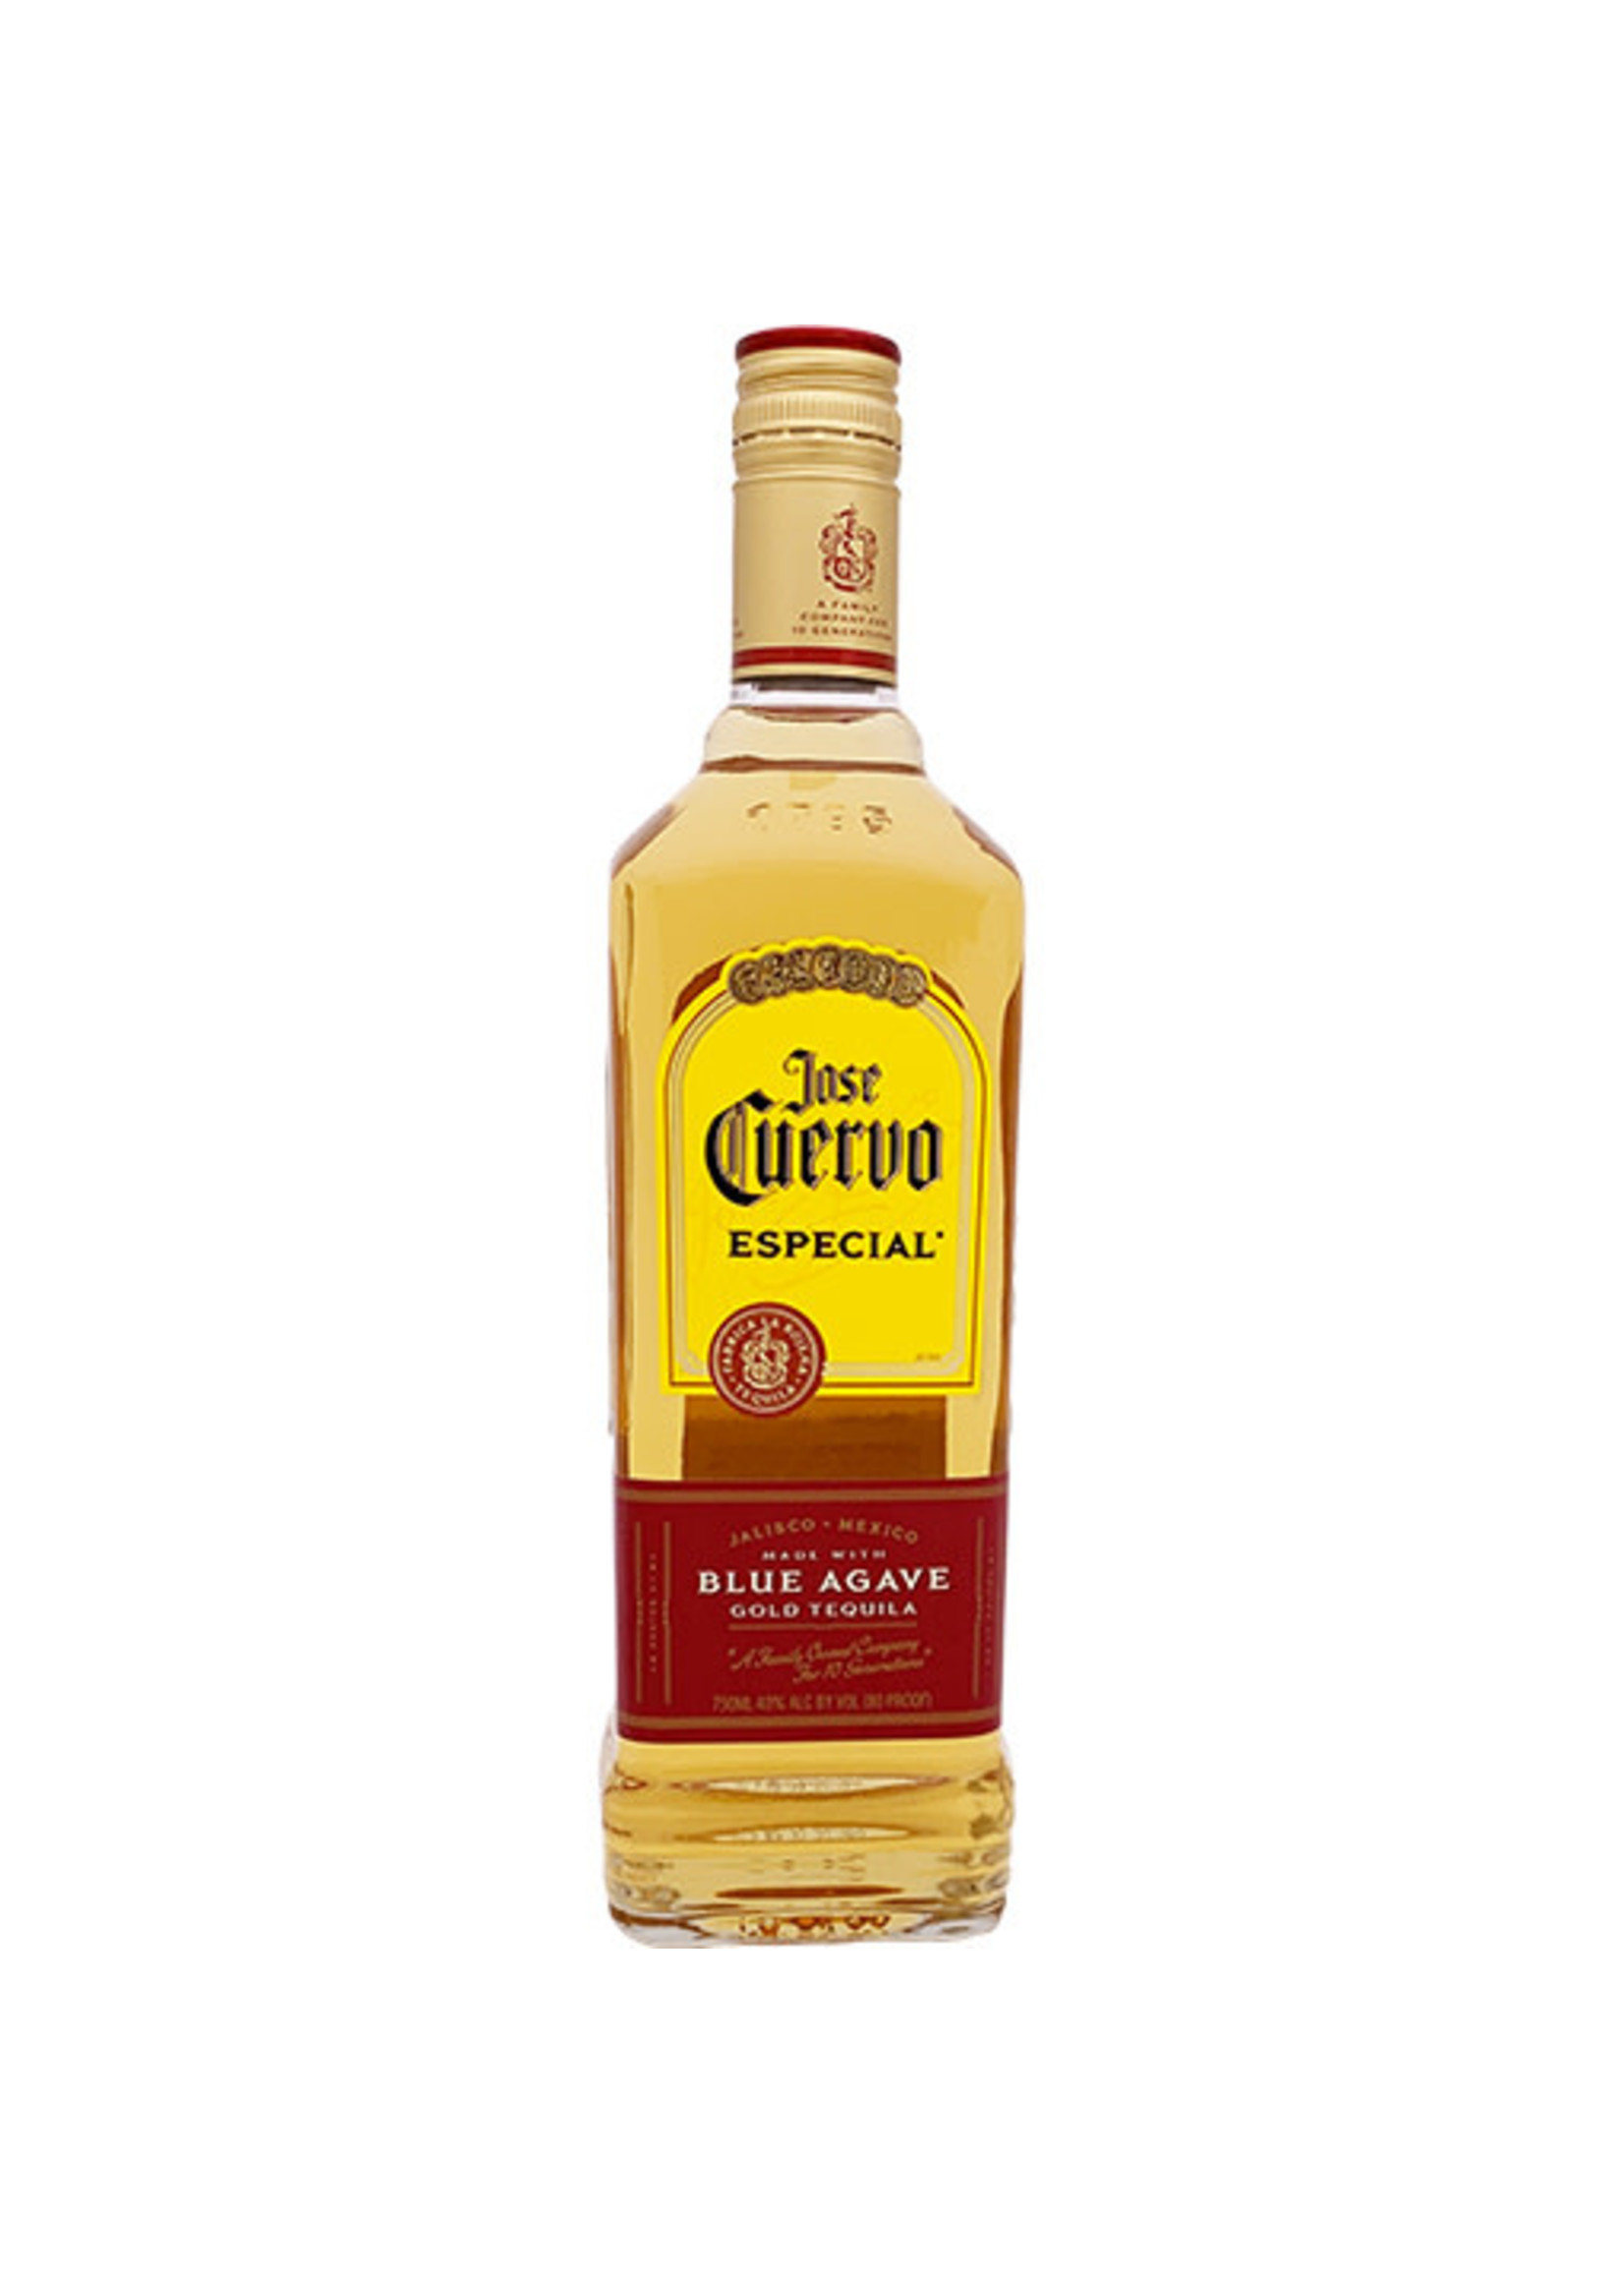 Jose Cuervo Jose Cuervo / Tequila Gold